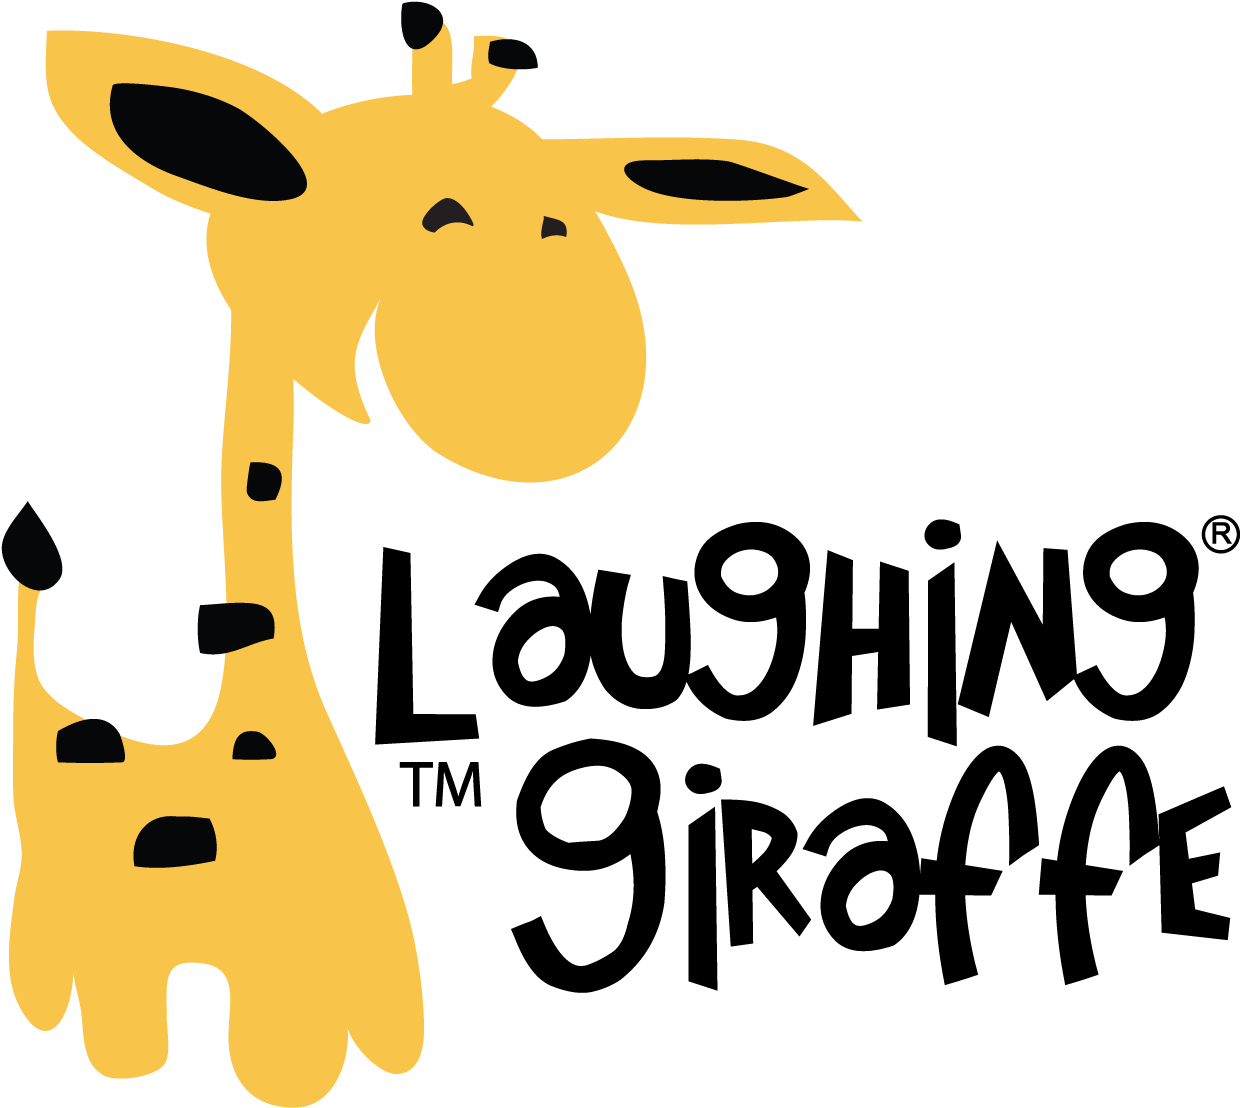 The Laughing Giraffe Logo - Laughing Giraffe Cotton Receiving Blanket - Quantity(1) (1298x1152)